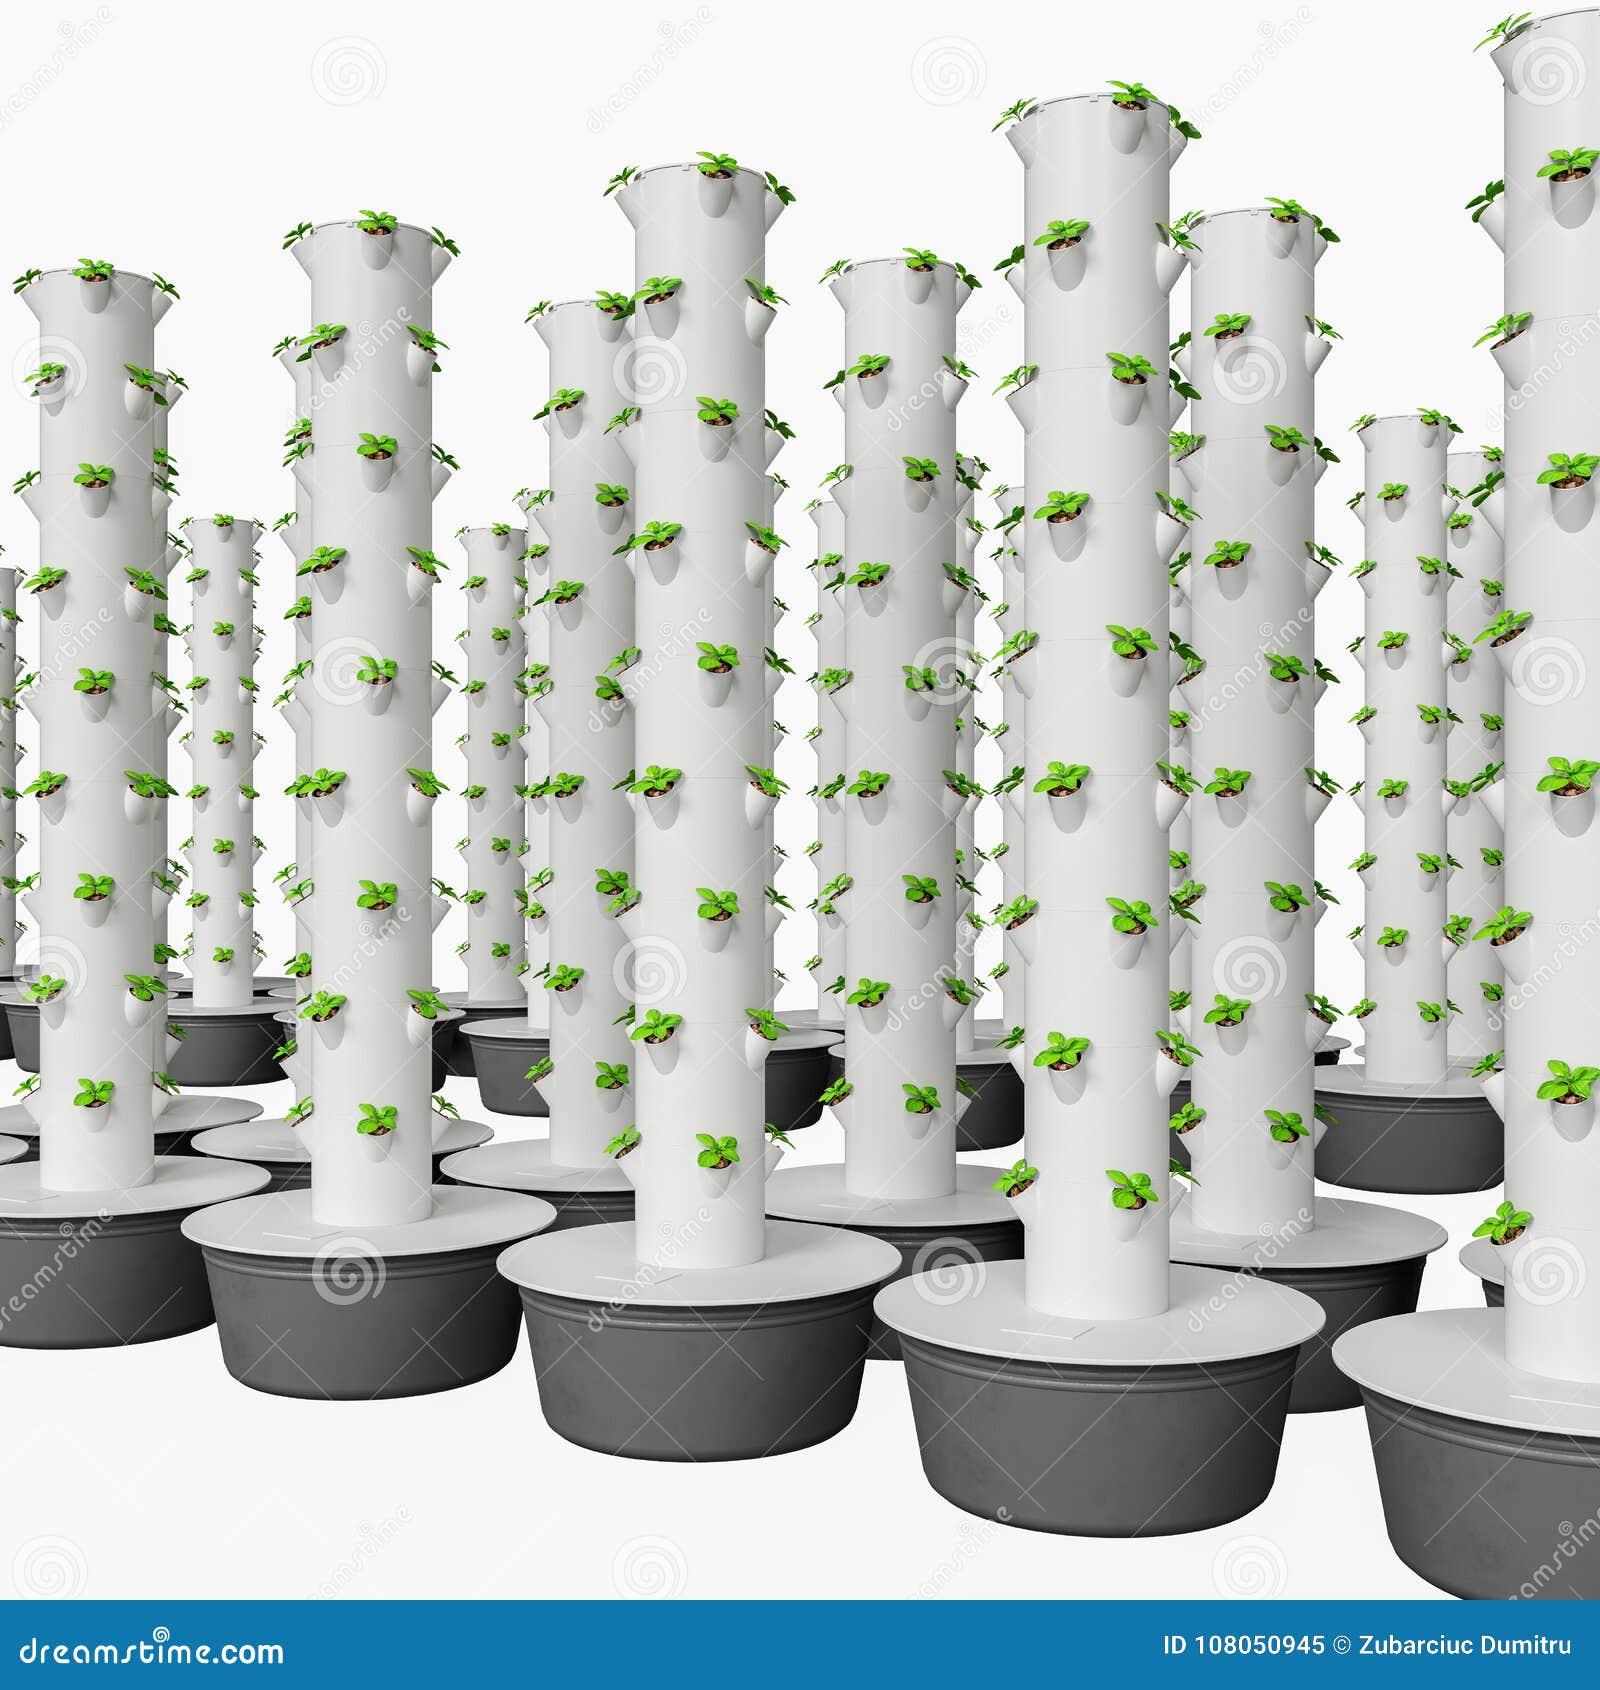 hydroponics pdf free download